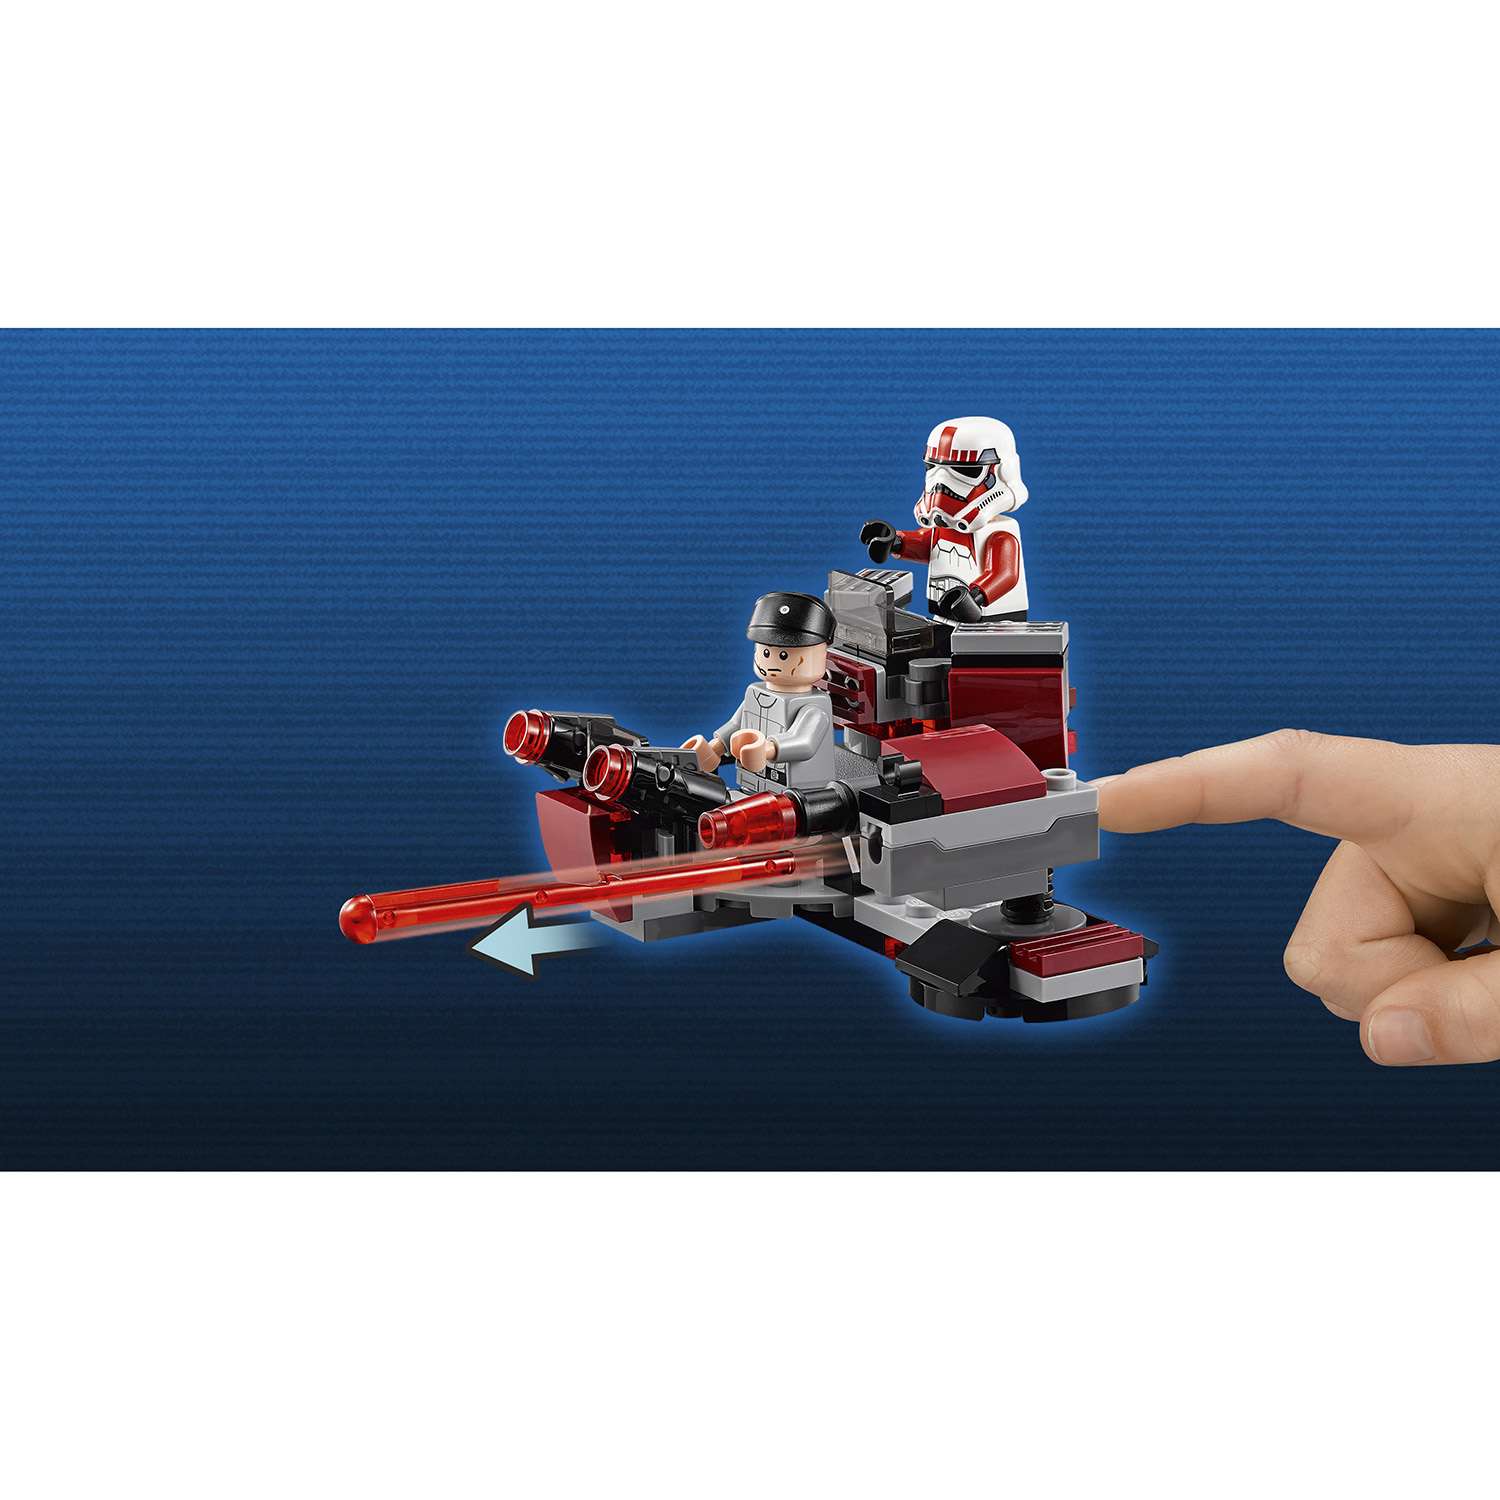 Конструктор LEGO Star Wars TM Боевой набор Галактической Империи™ (75134) - фото 6